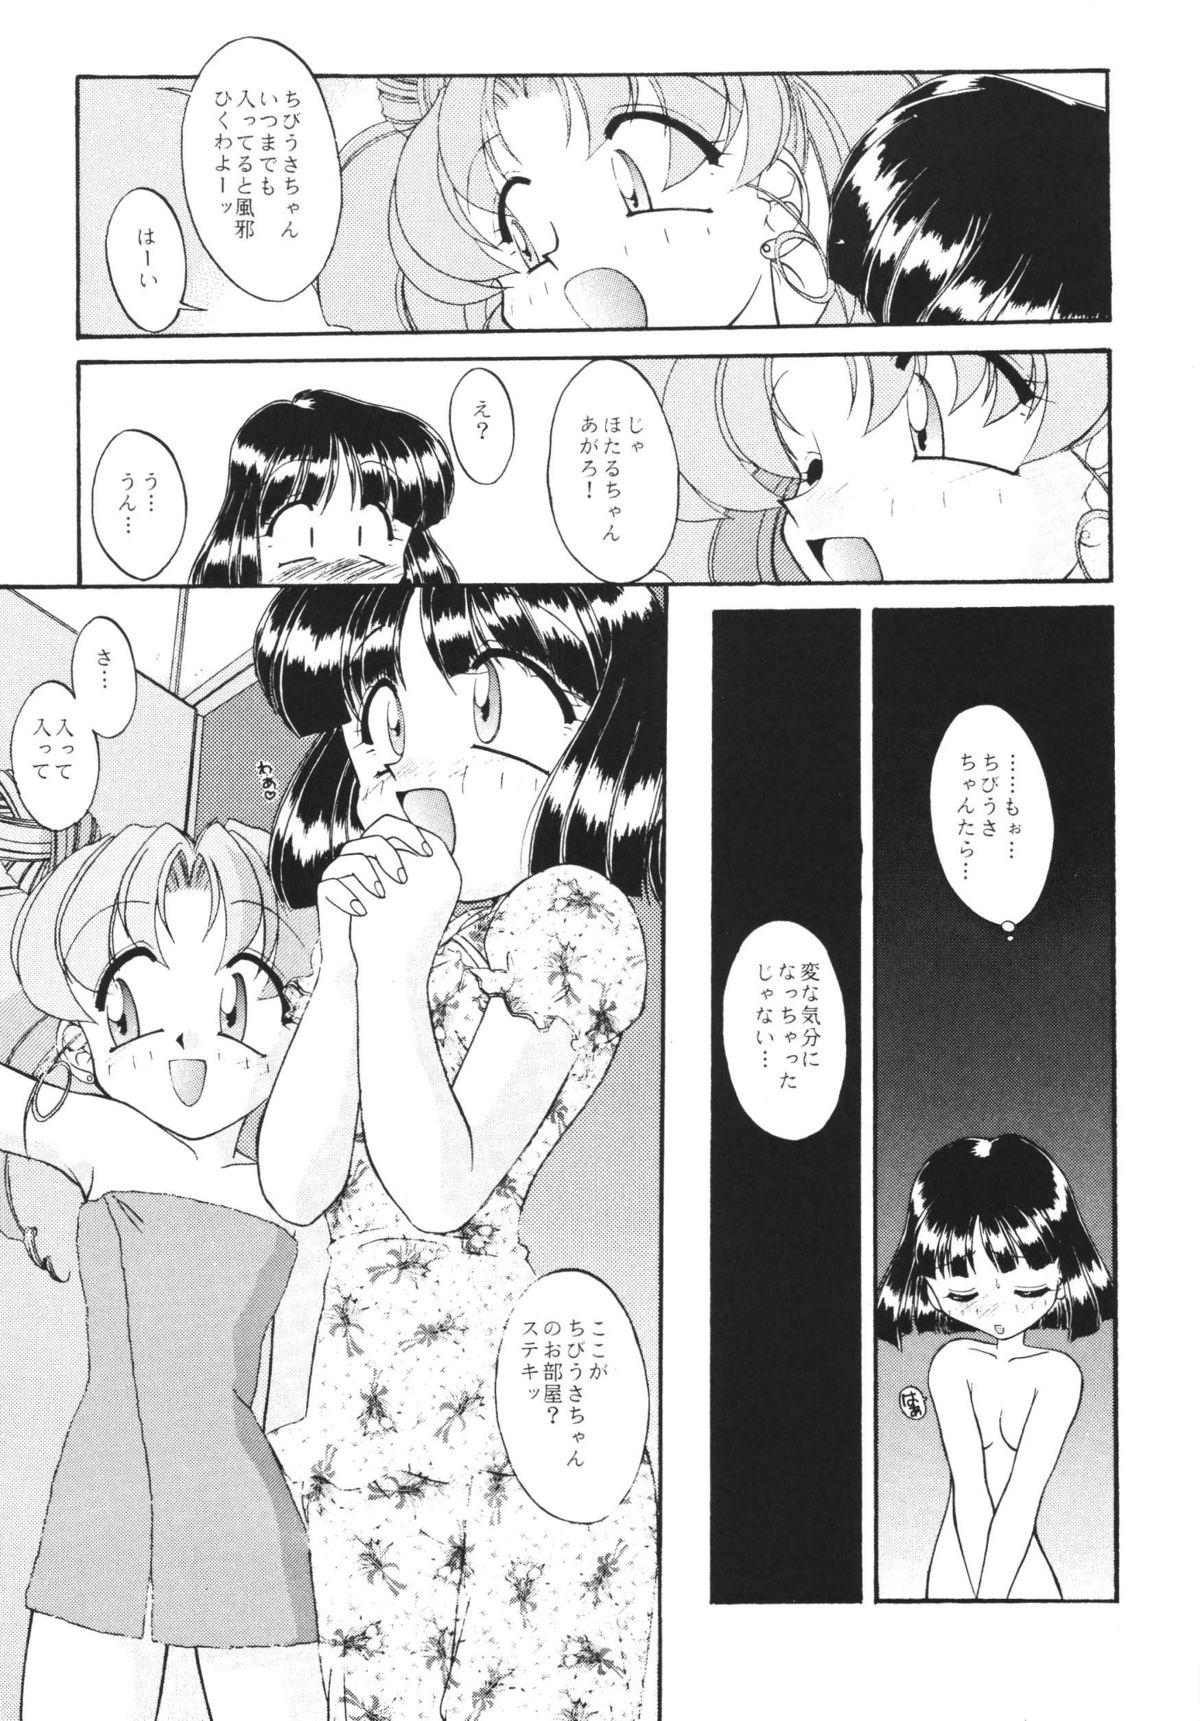 POV MOON MEMORIES Vol. 2 - Sailor moon Big Butt - Page 7